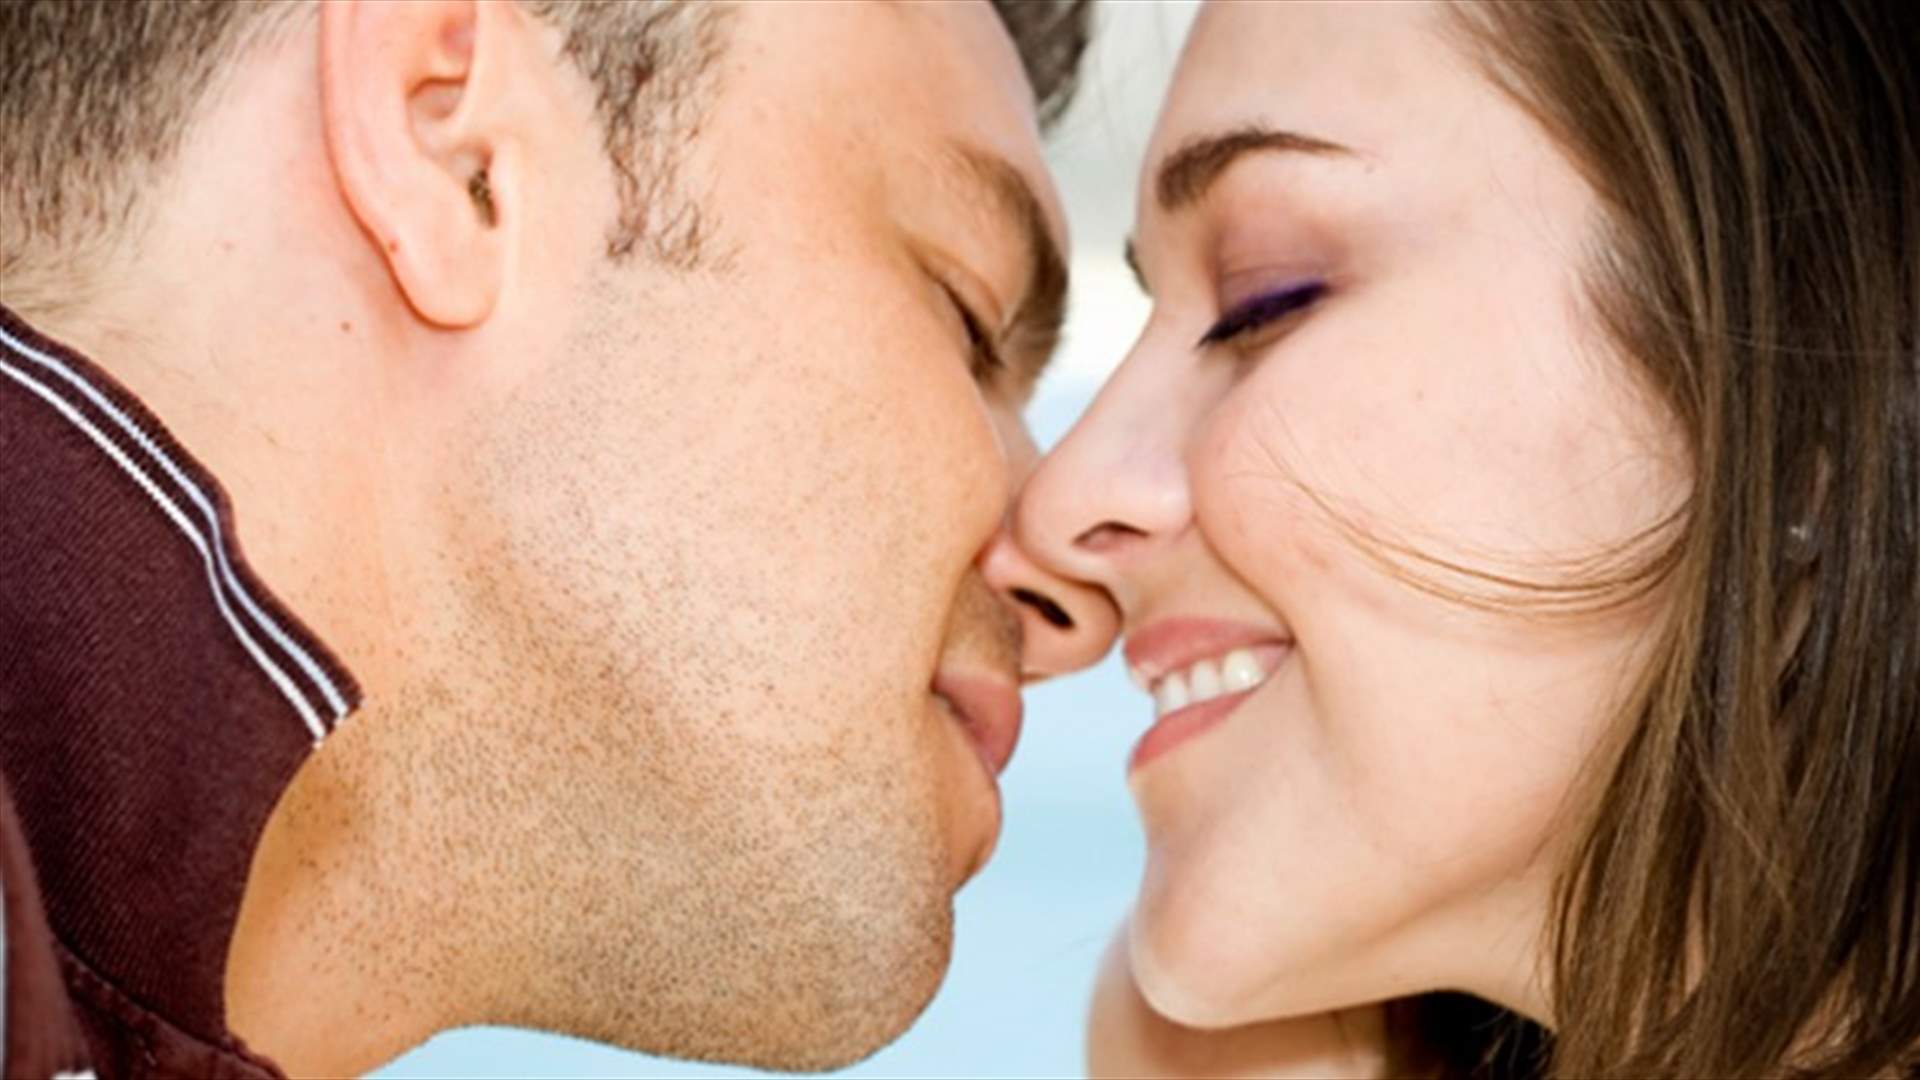  4 أمراض قد تصابون بها عند التقبيل!